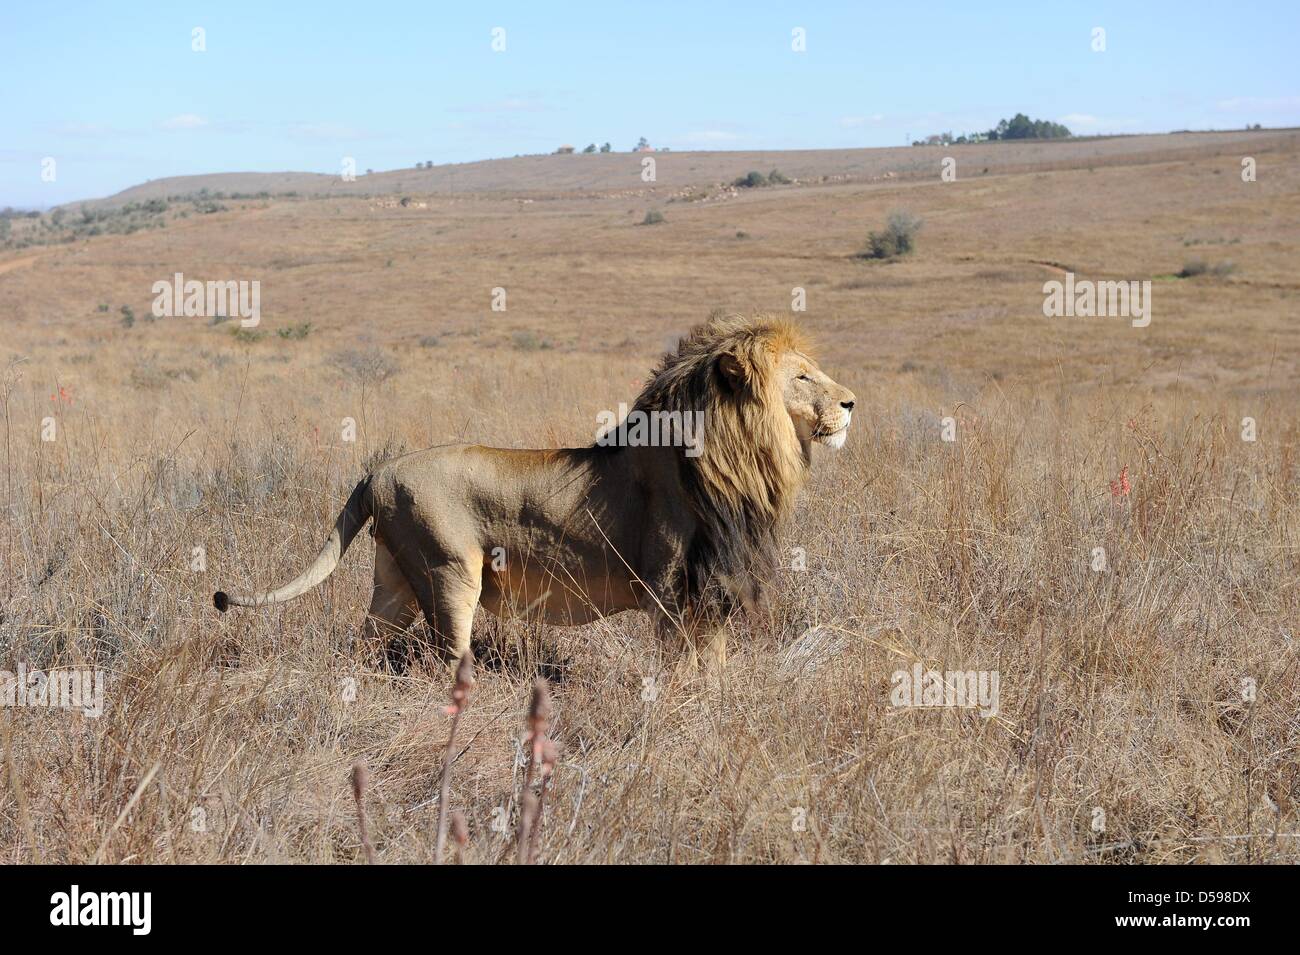 Un leone sta nell'erba a Rhino e Lion Riserva Naturale, circa quaranta chilometri a nord di Johannesburg, Sud Africa 15 Giugno 2010. La riserva è l'habitat di rinoceronti, leoni, bufali, ippopotami e altri animali domiciliato in Sud Africa. Foto: Achim Scheidemann Foto Stock